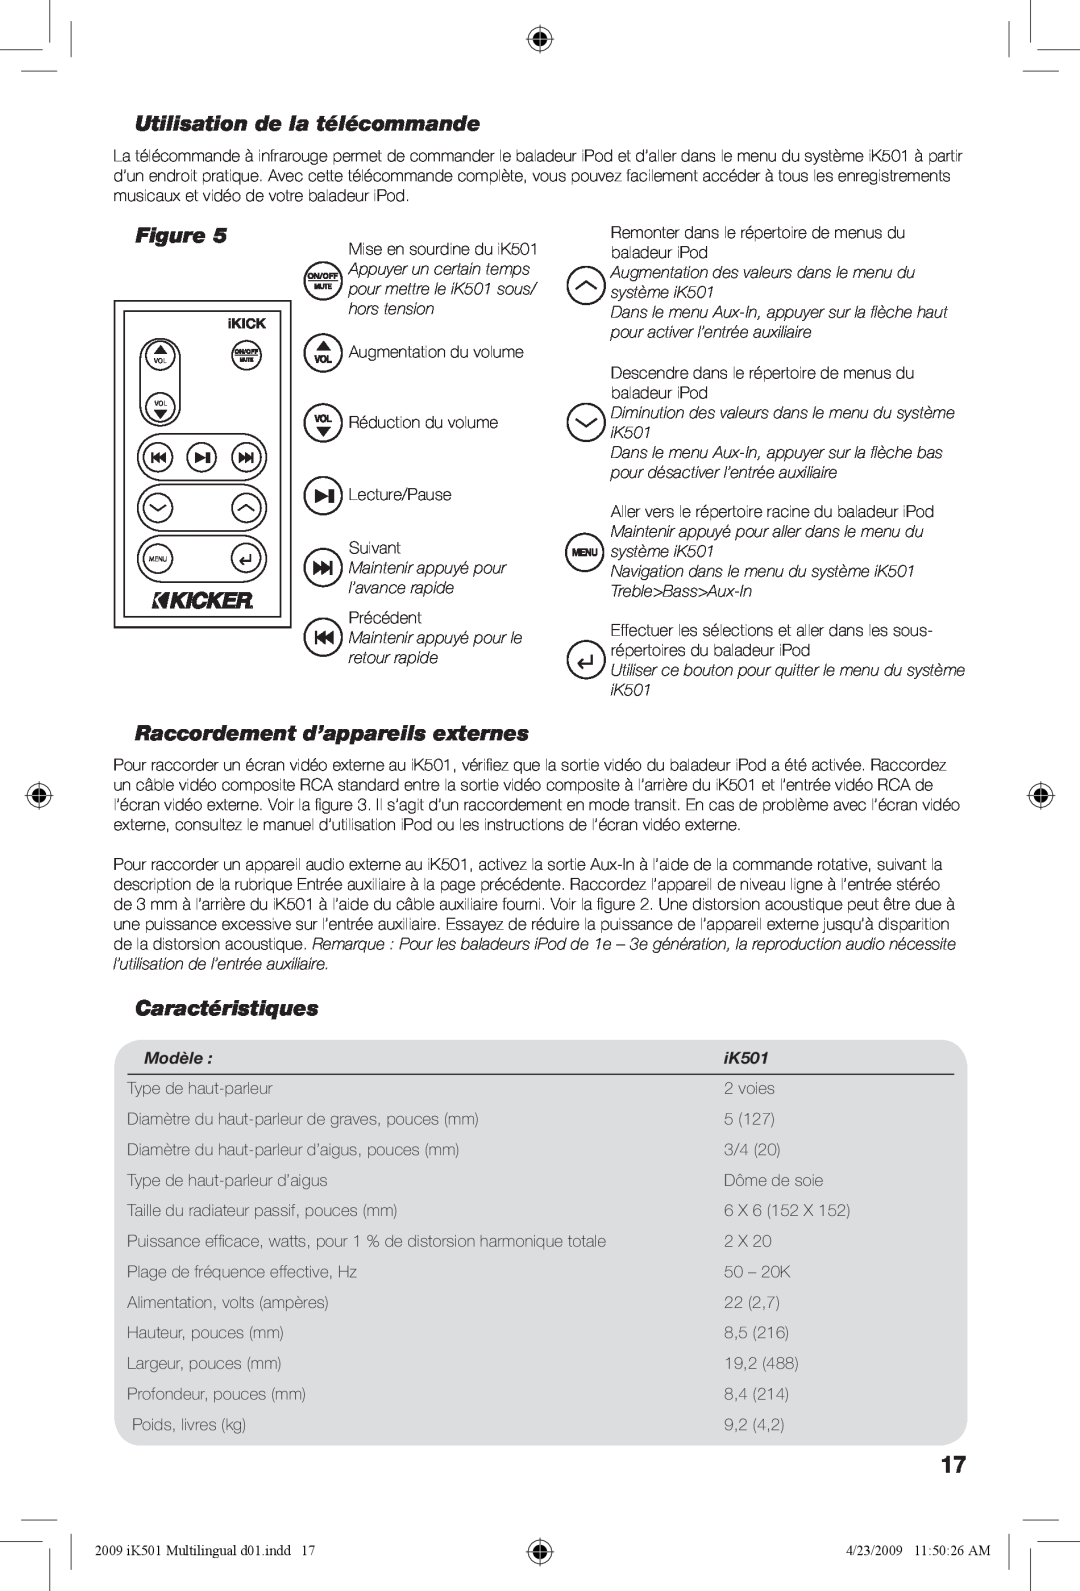 Kicker iK501 manual Utilisation de la télécommande, Raccordement d’appareils externes, Caractéristiques, Modèle 